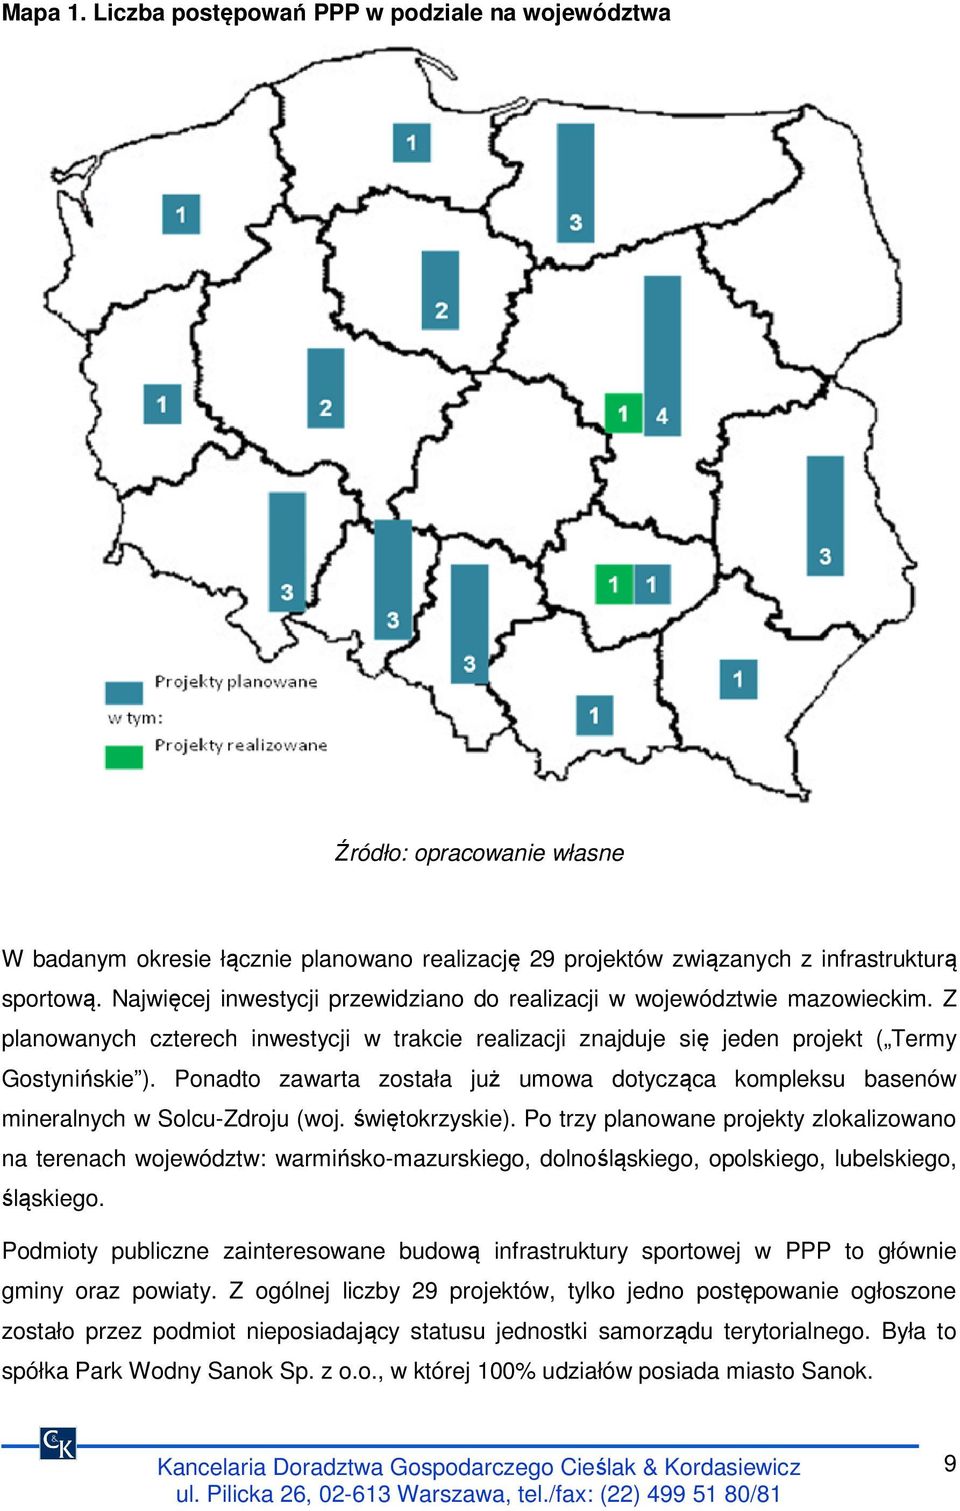 Ponadto zawarta została już umowa dotycząca kompleksu basenów mineralnych w Solcu-Zdroju (woj. świętokrzyskie).